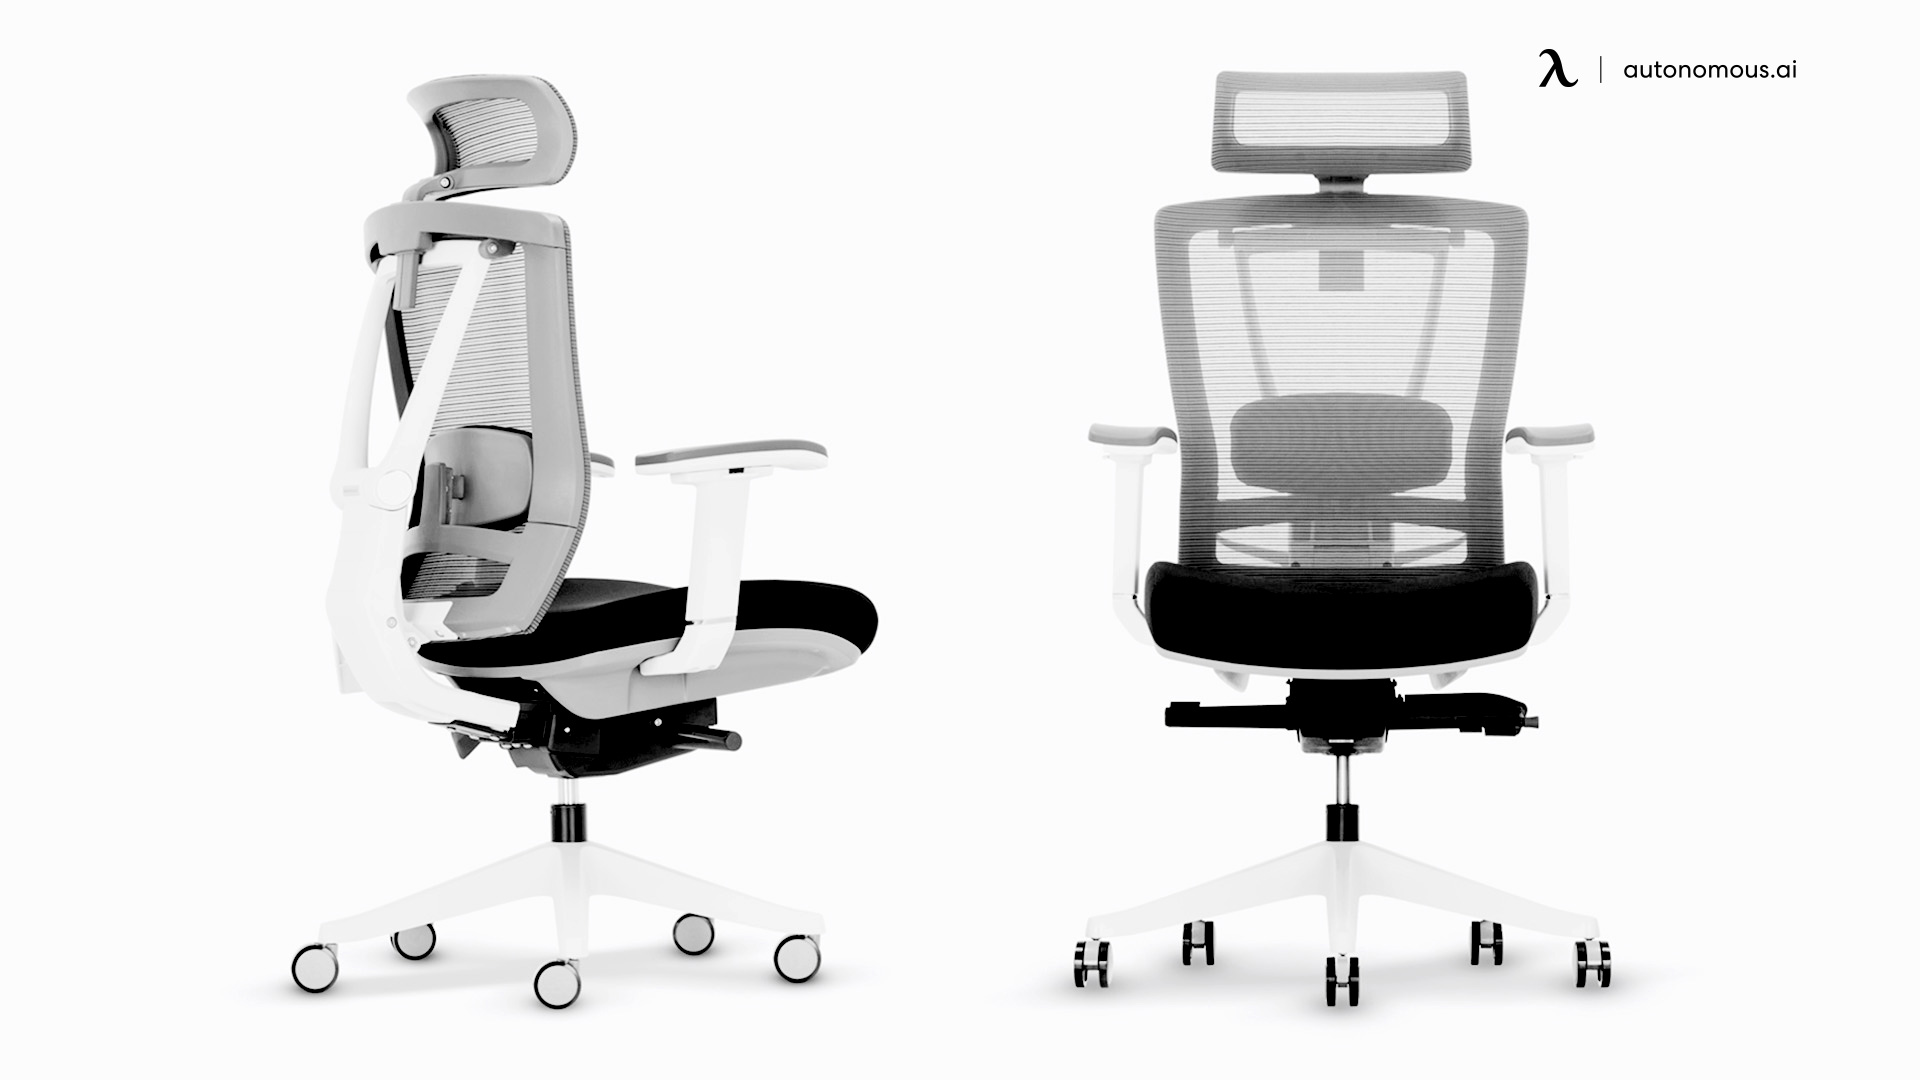 ErgoChair Pro large office chair